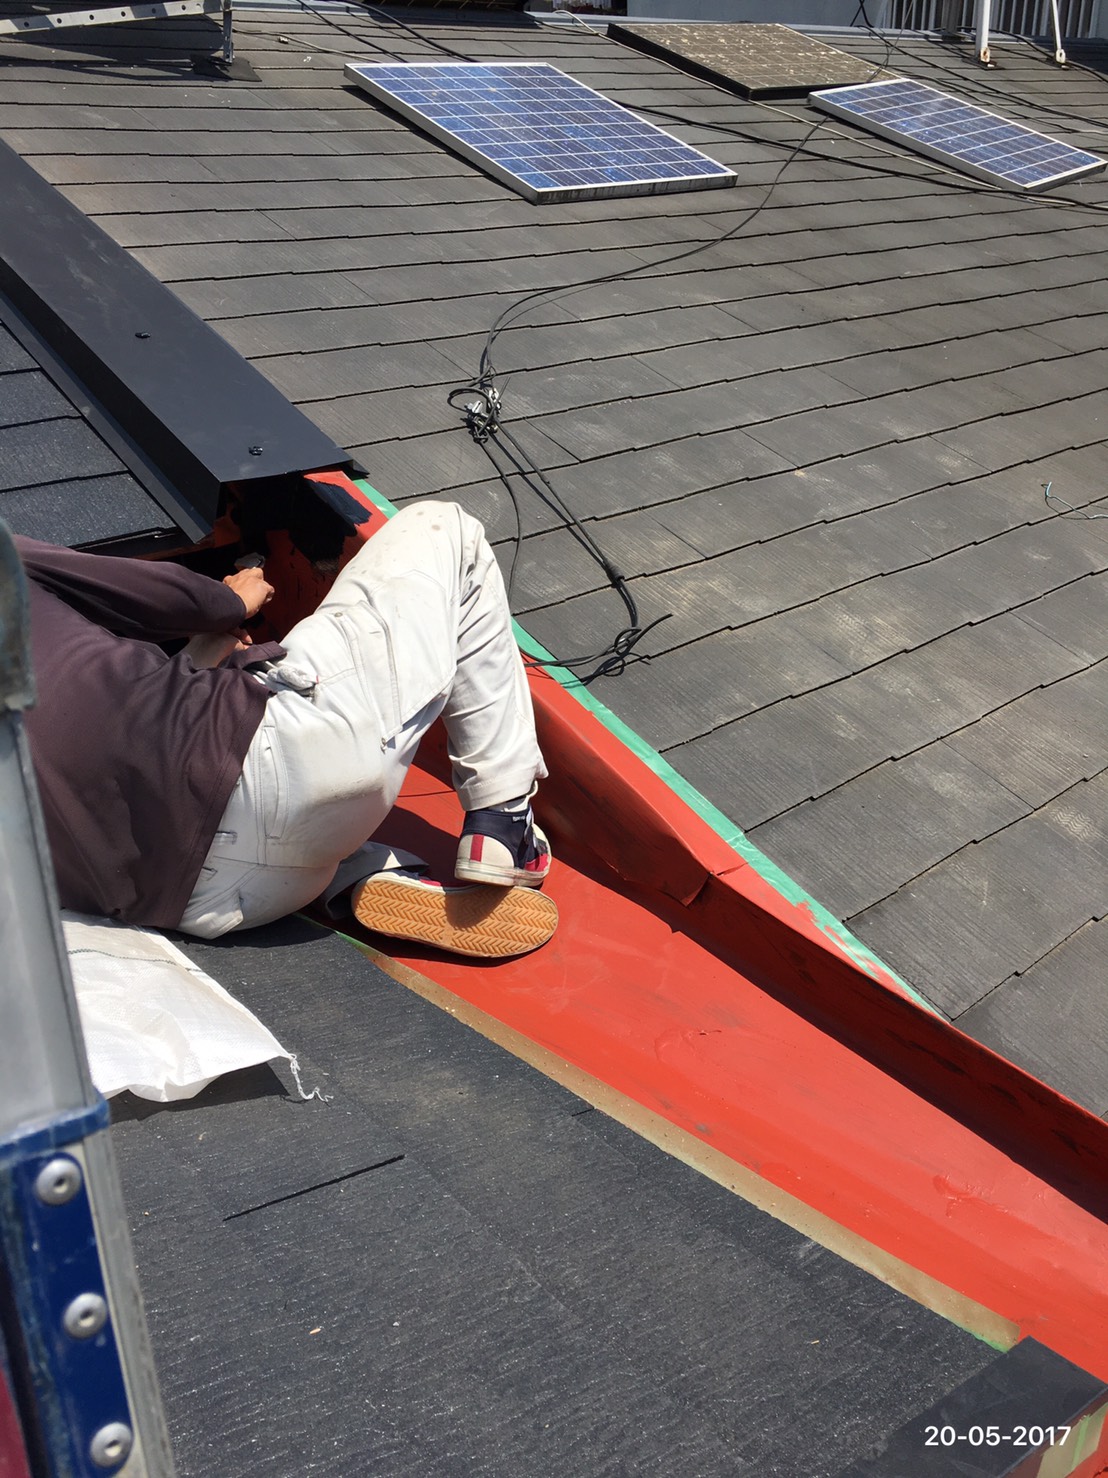 日本瓦→カラーベストへ葺き替え・谷板サビ止め塗装・外壁補修(屋根工事・屋根修理)